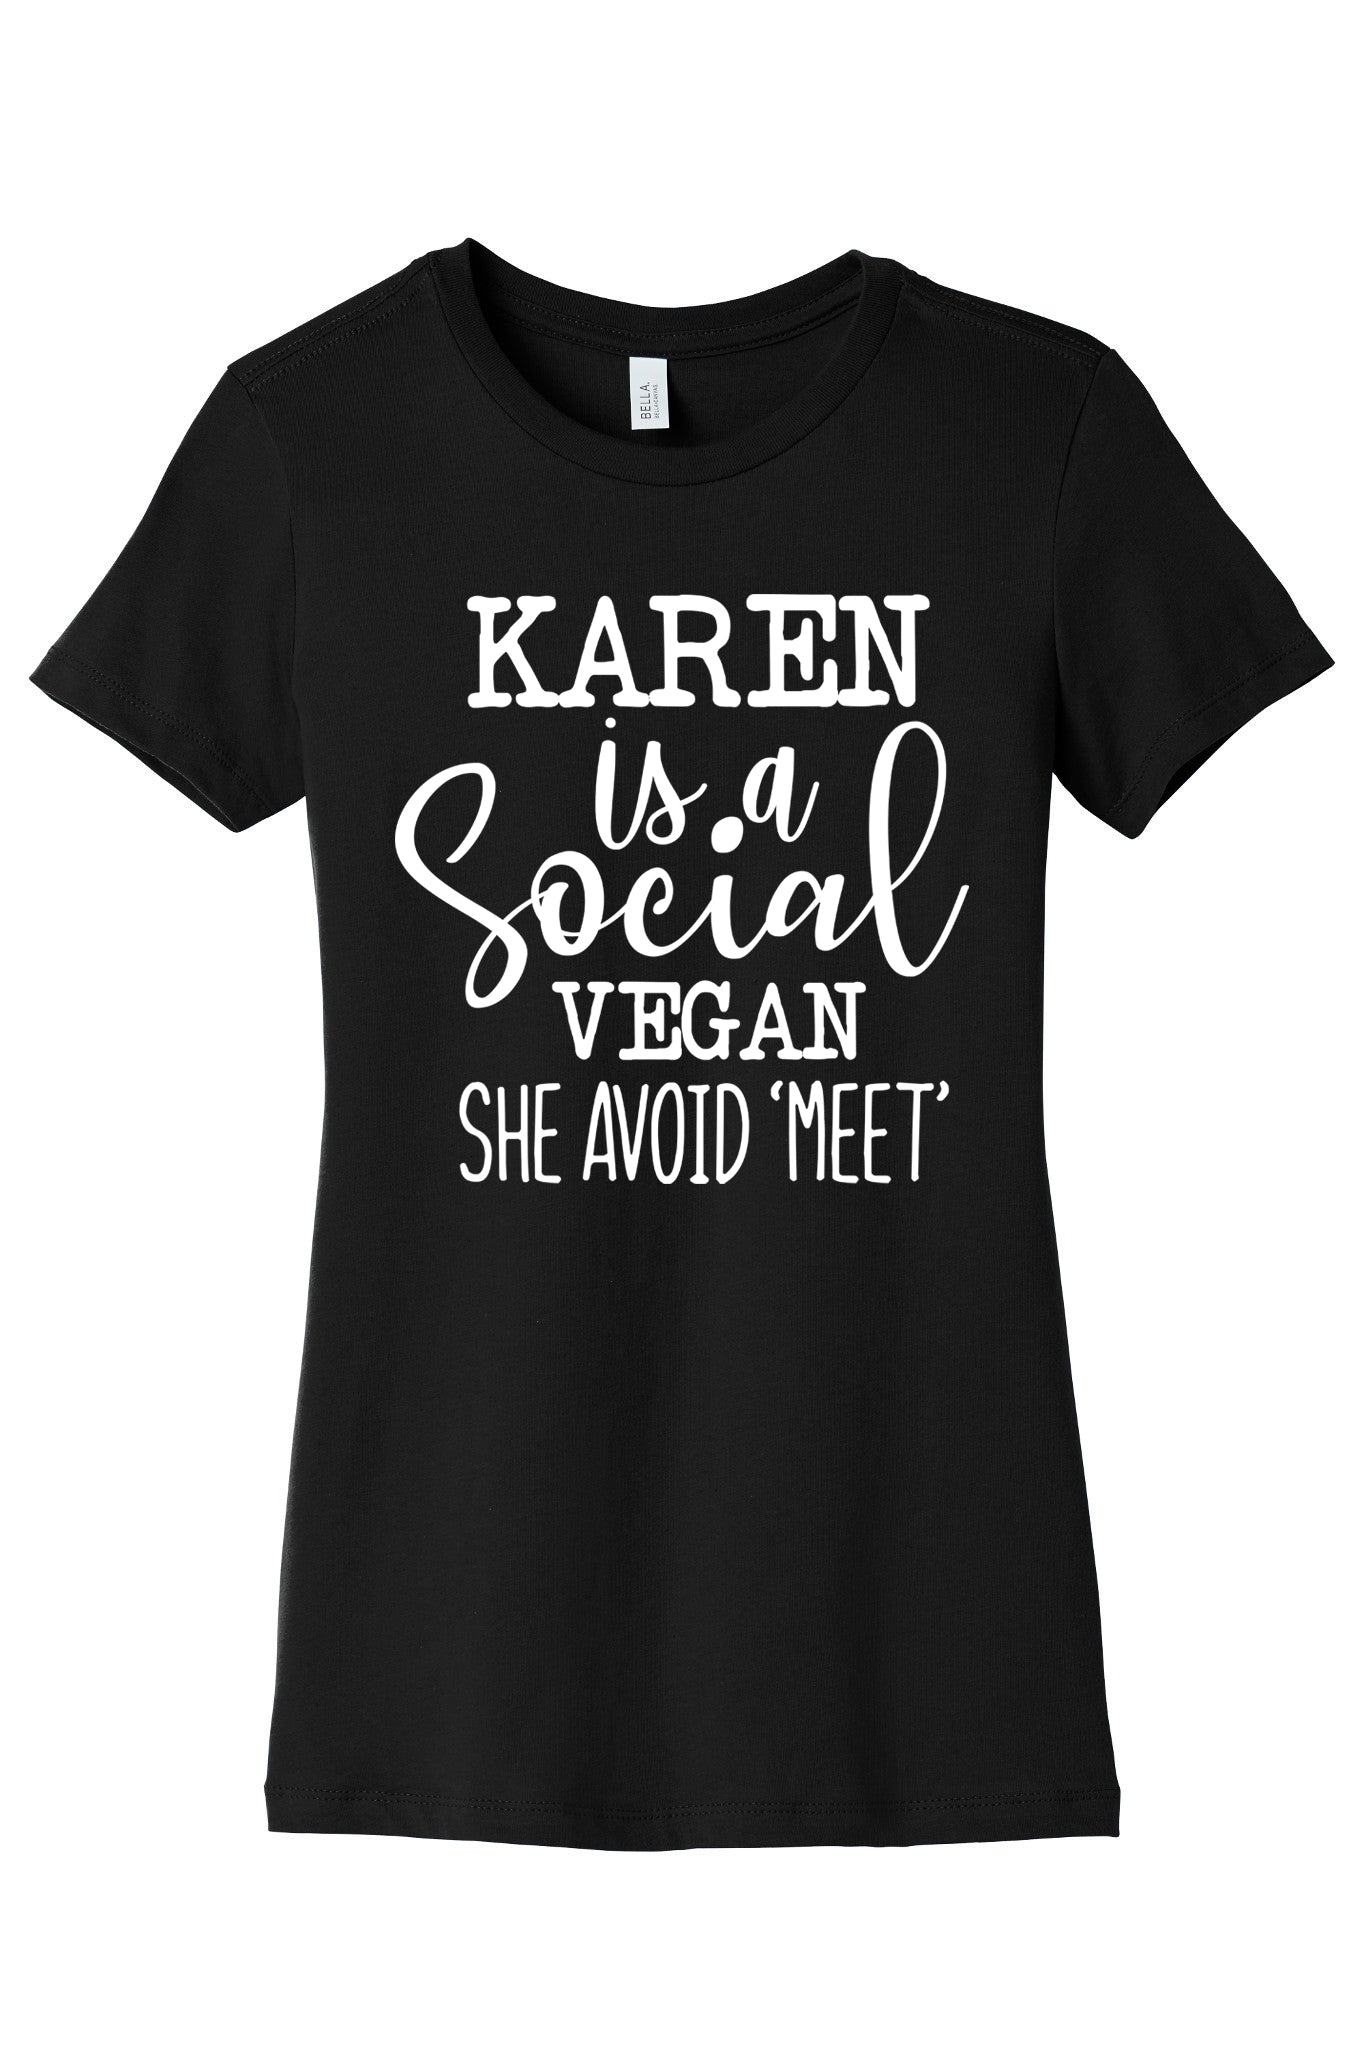 Karen Hate "Meet"